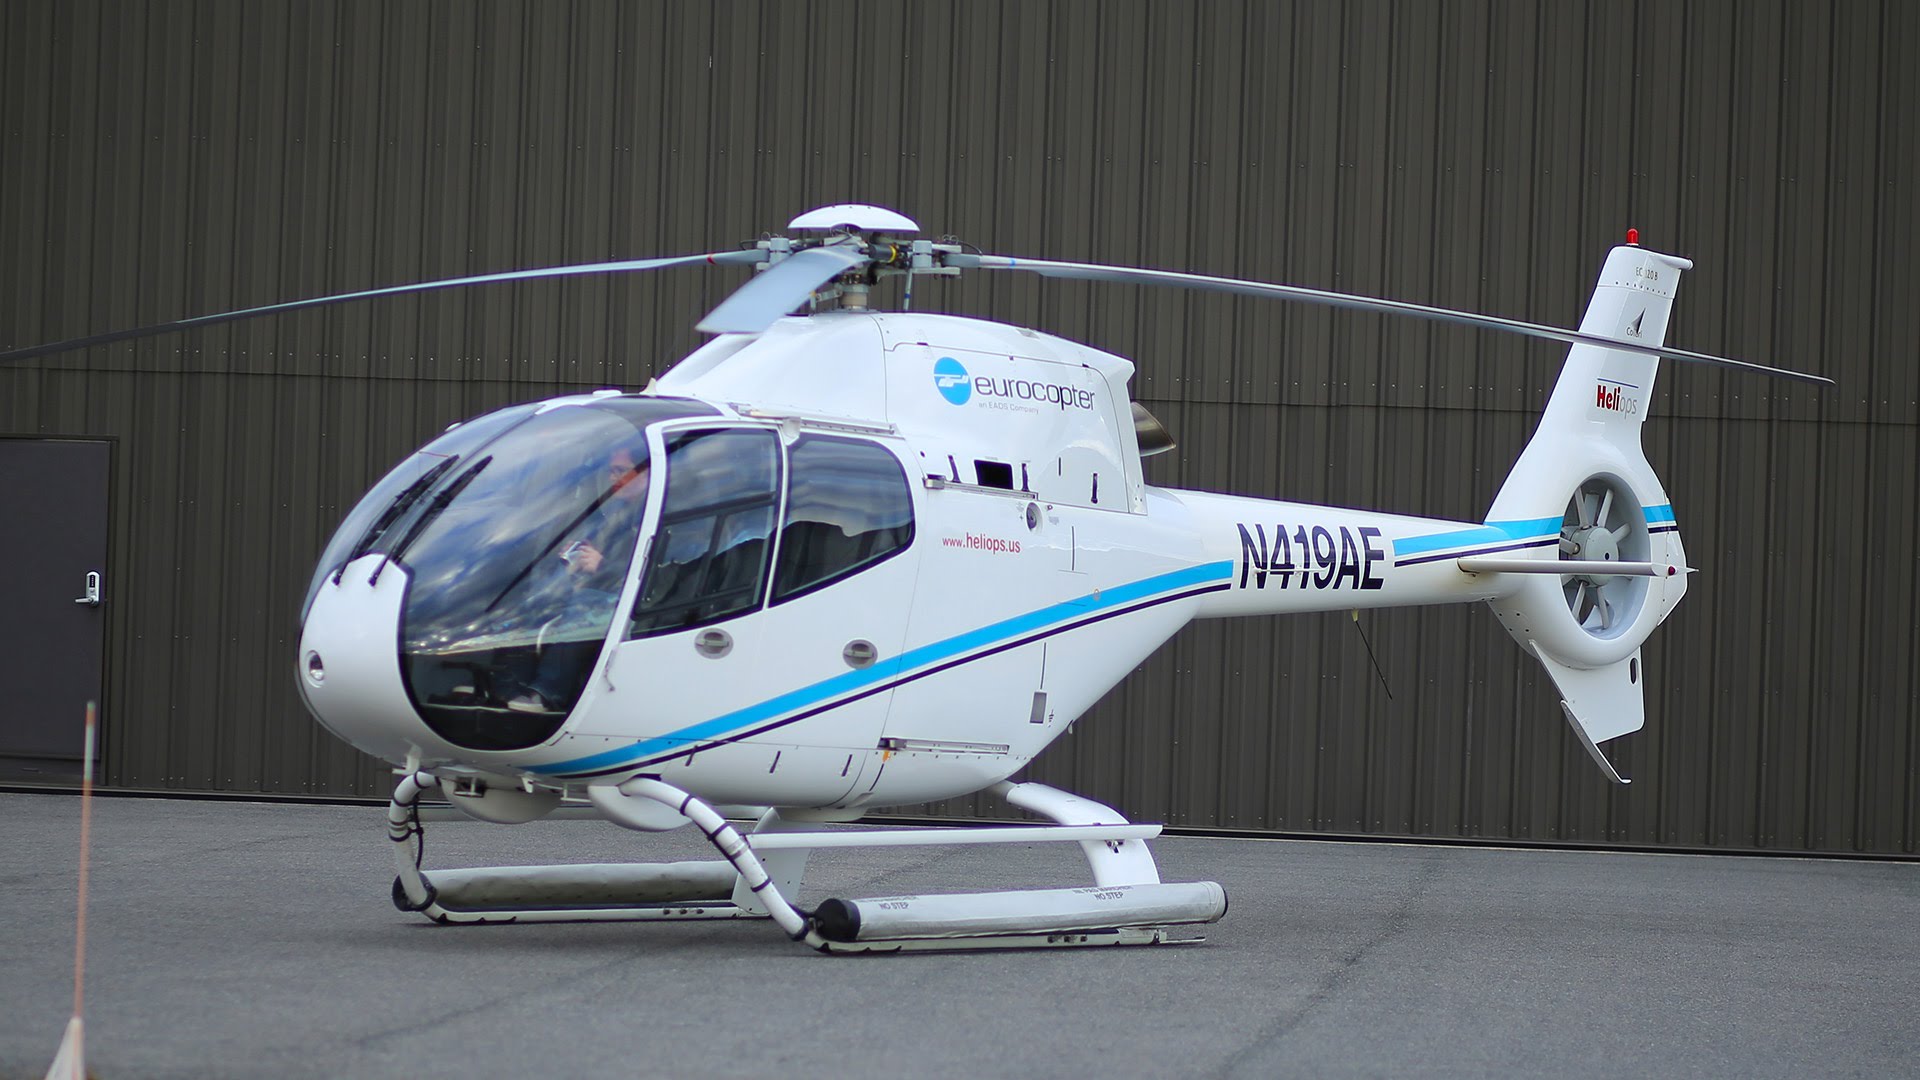 Collibri helicopter photo